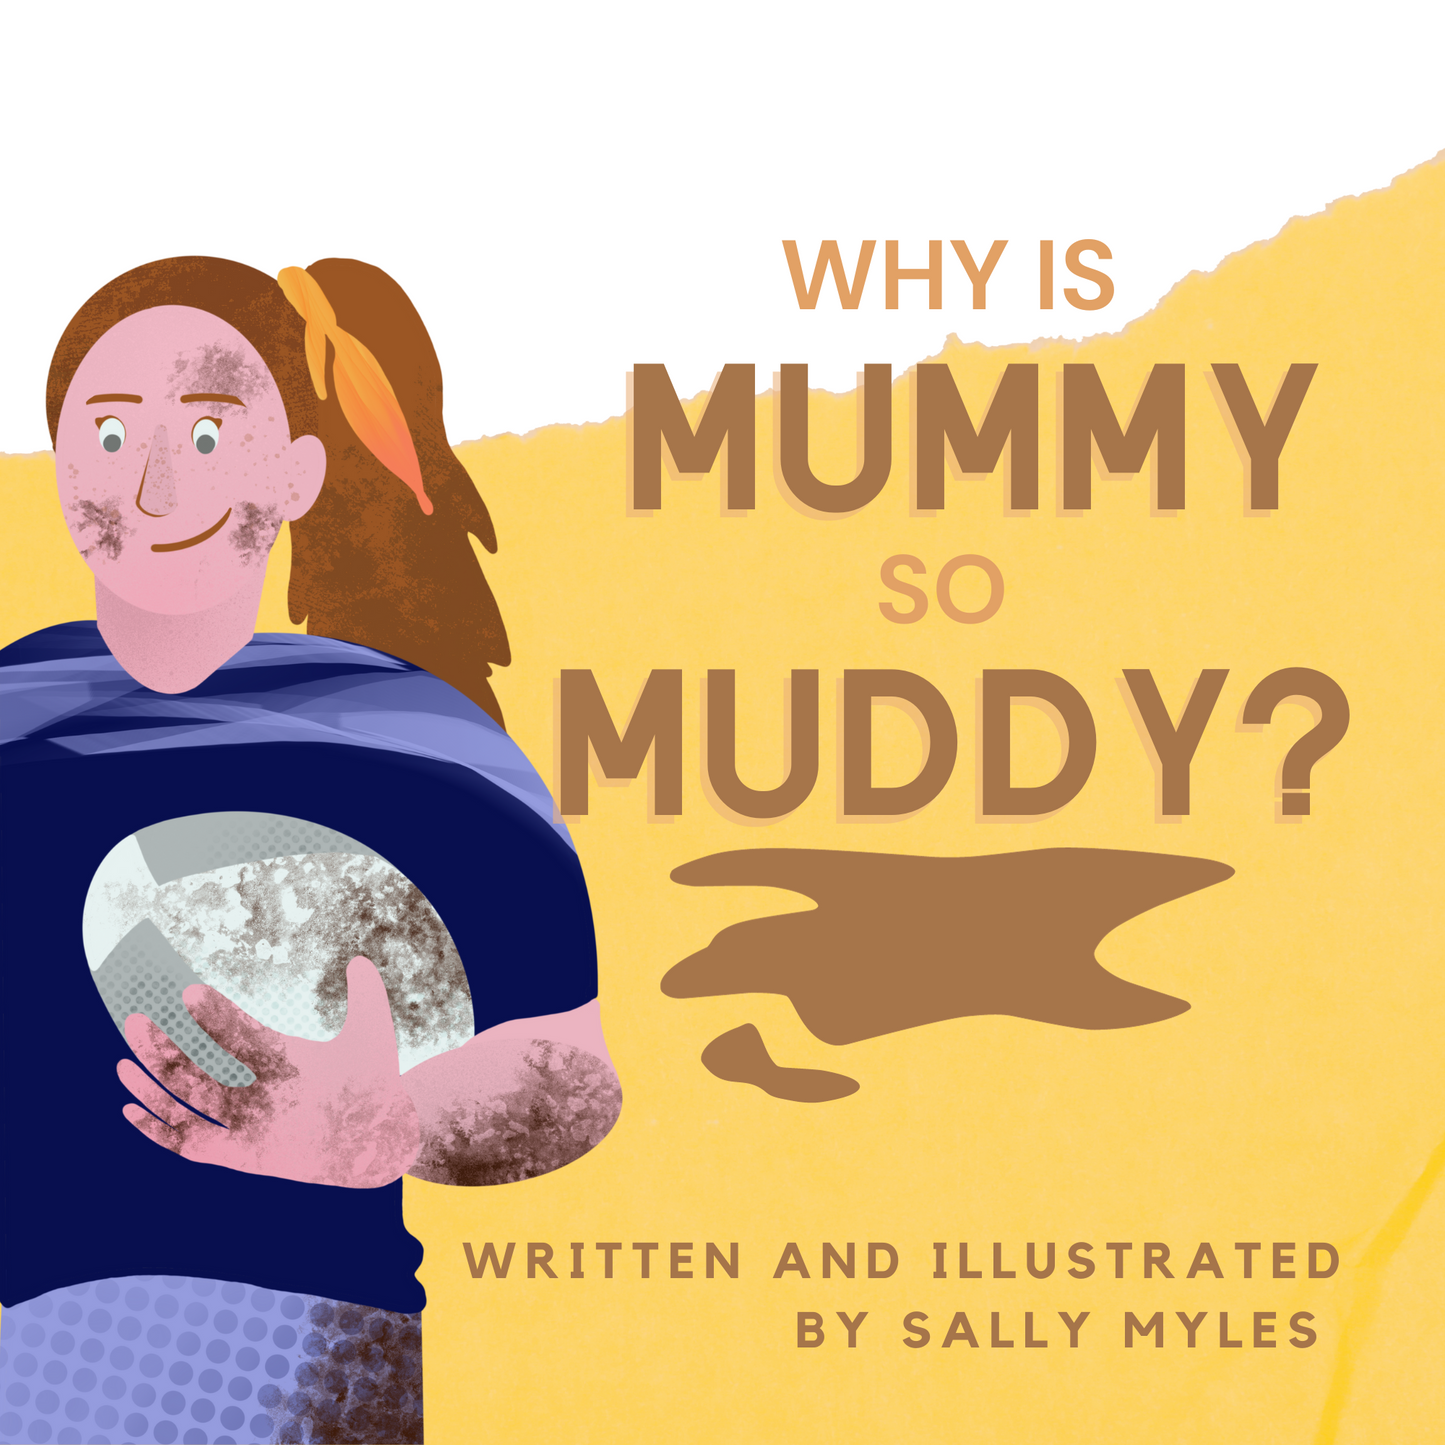 Why is Mummy so Muddy